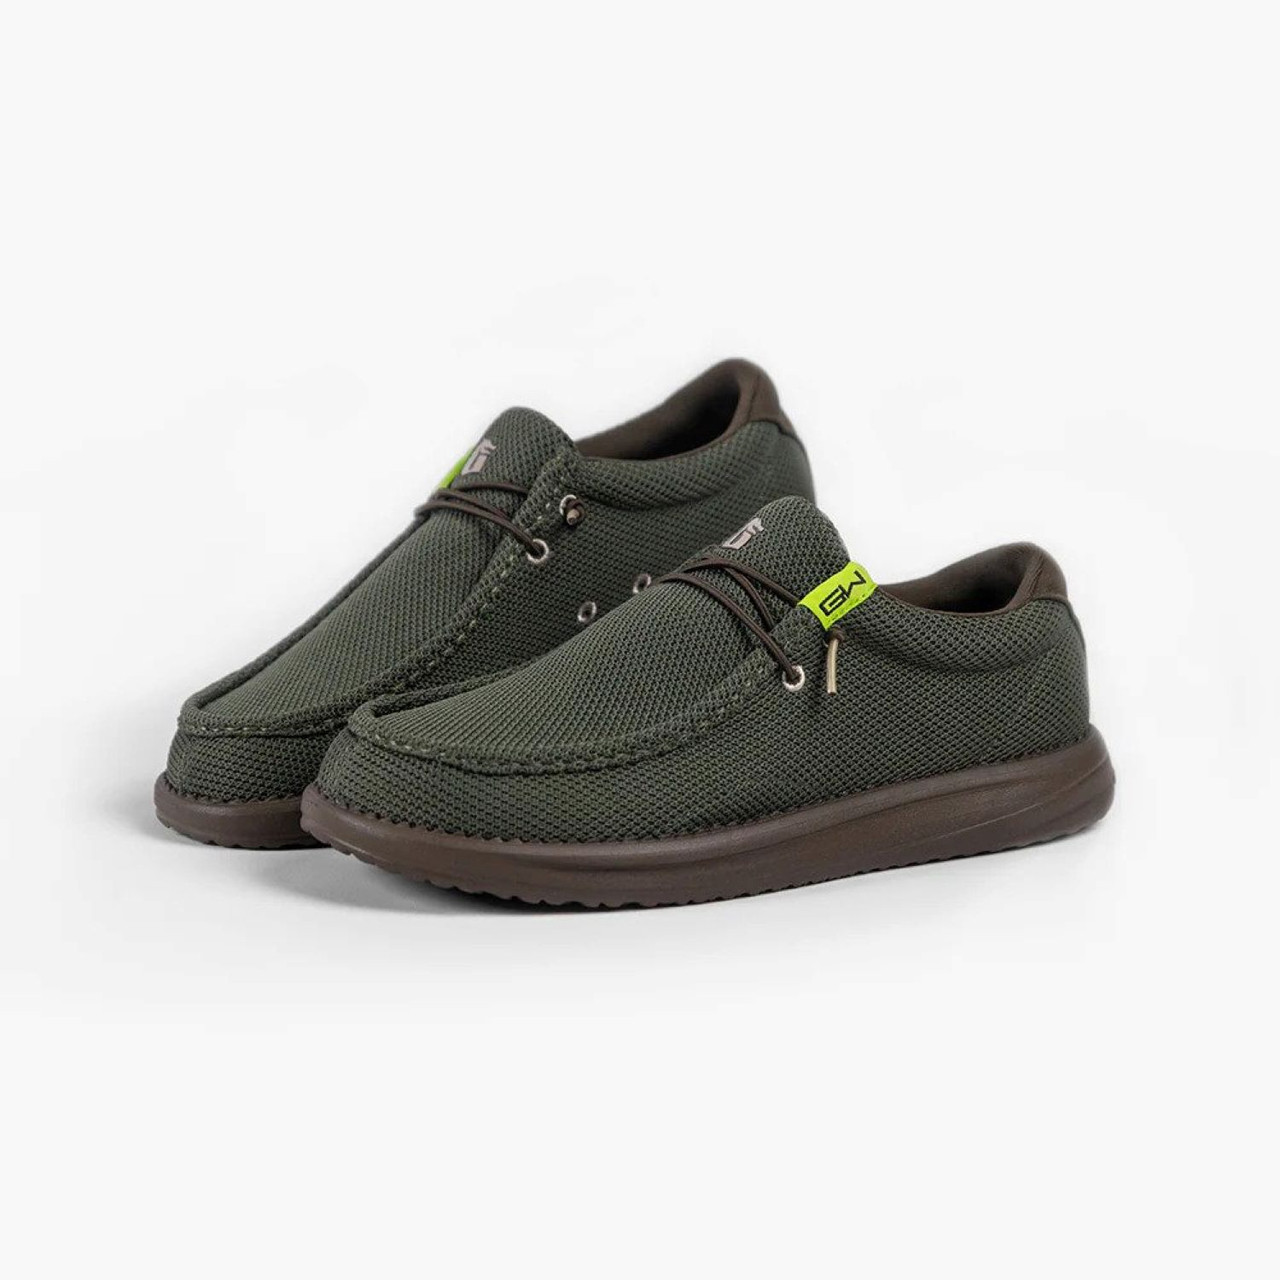 Gator Waders Men's Camp Shoes Light & Comfortable - Olive - Regular Size 10